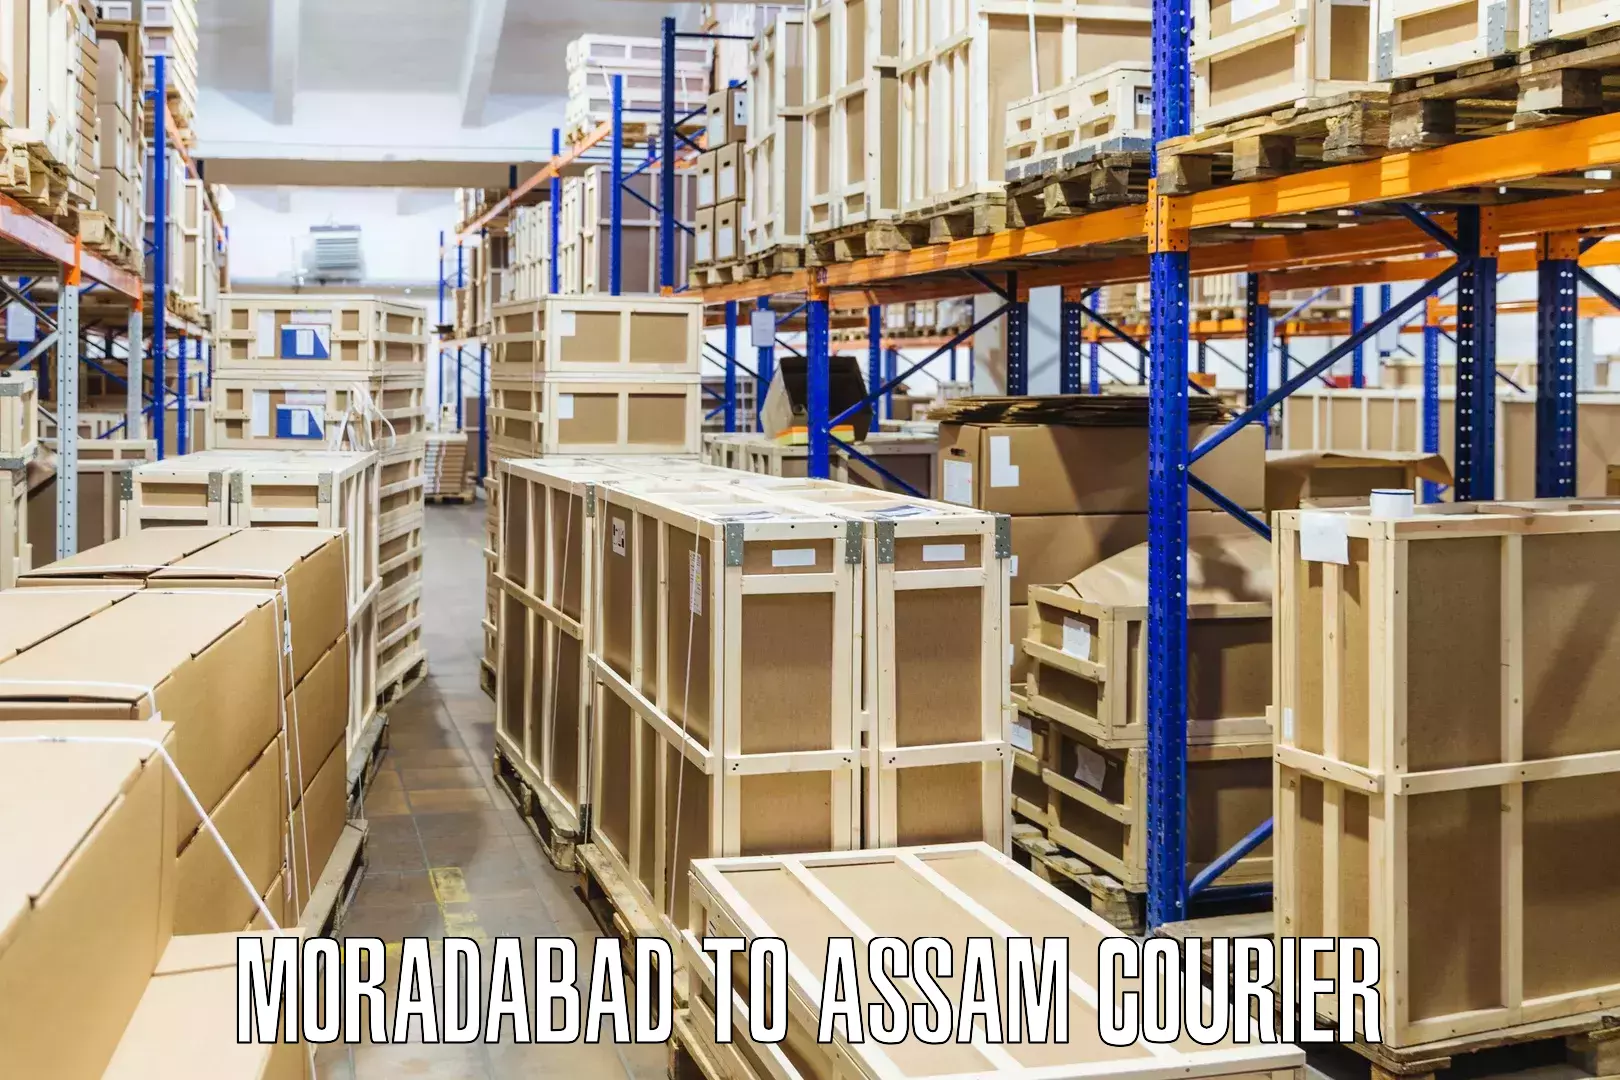 Comprehensive delivery network Moradabad to Baksha Bodoland